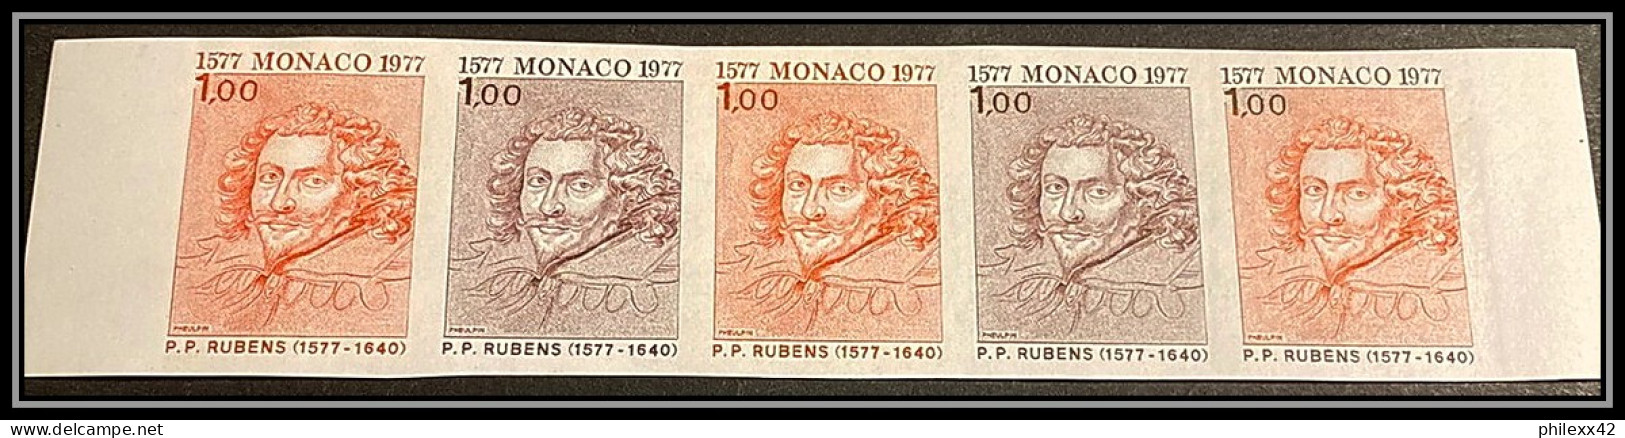 92945g Monaco 1099 Villiers Duc De Buckingham Rubens Tableau Painting Essai Proof Non Dentelé ** MNH Imperf Bande 5 - Rubens